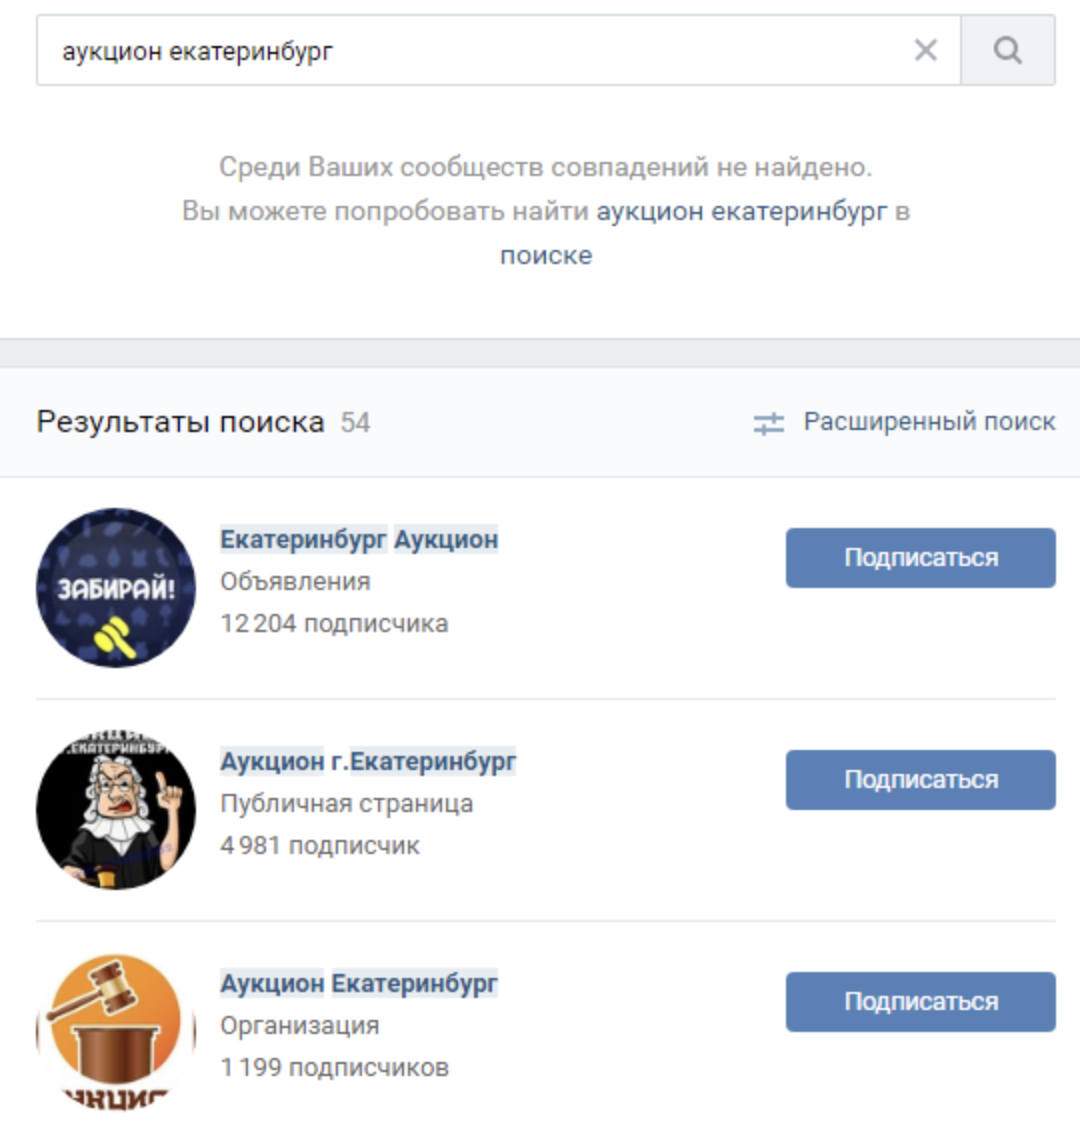 Как заработать деньги на платформах Авито и ВКонтакте?